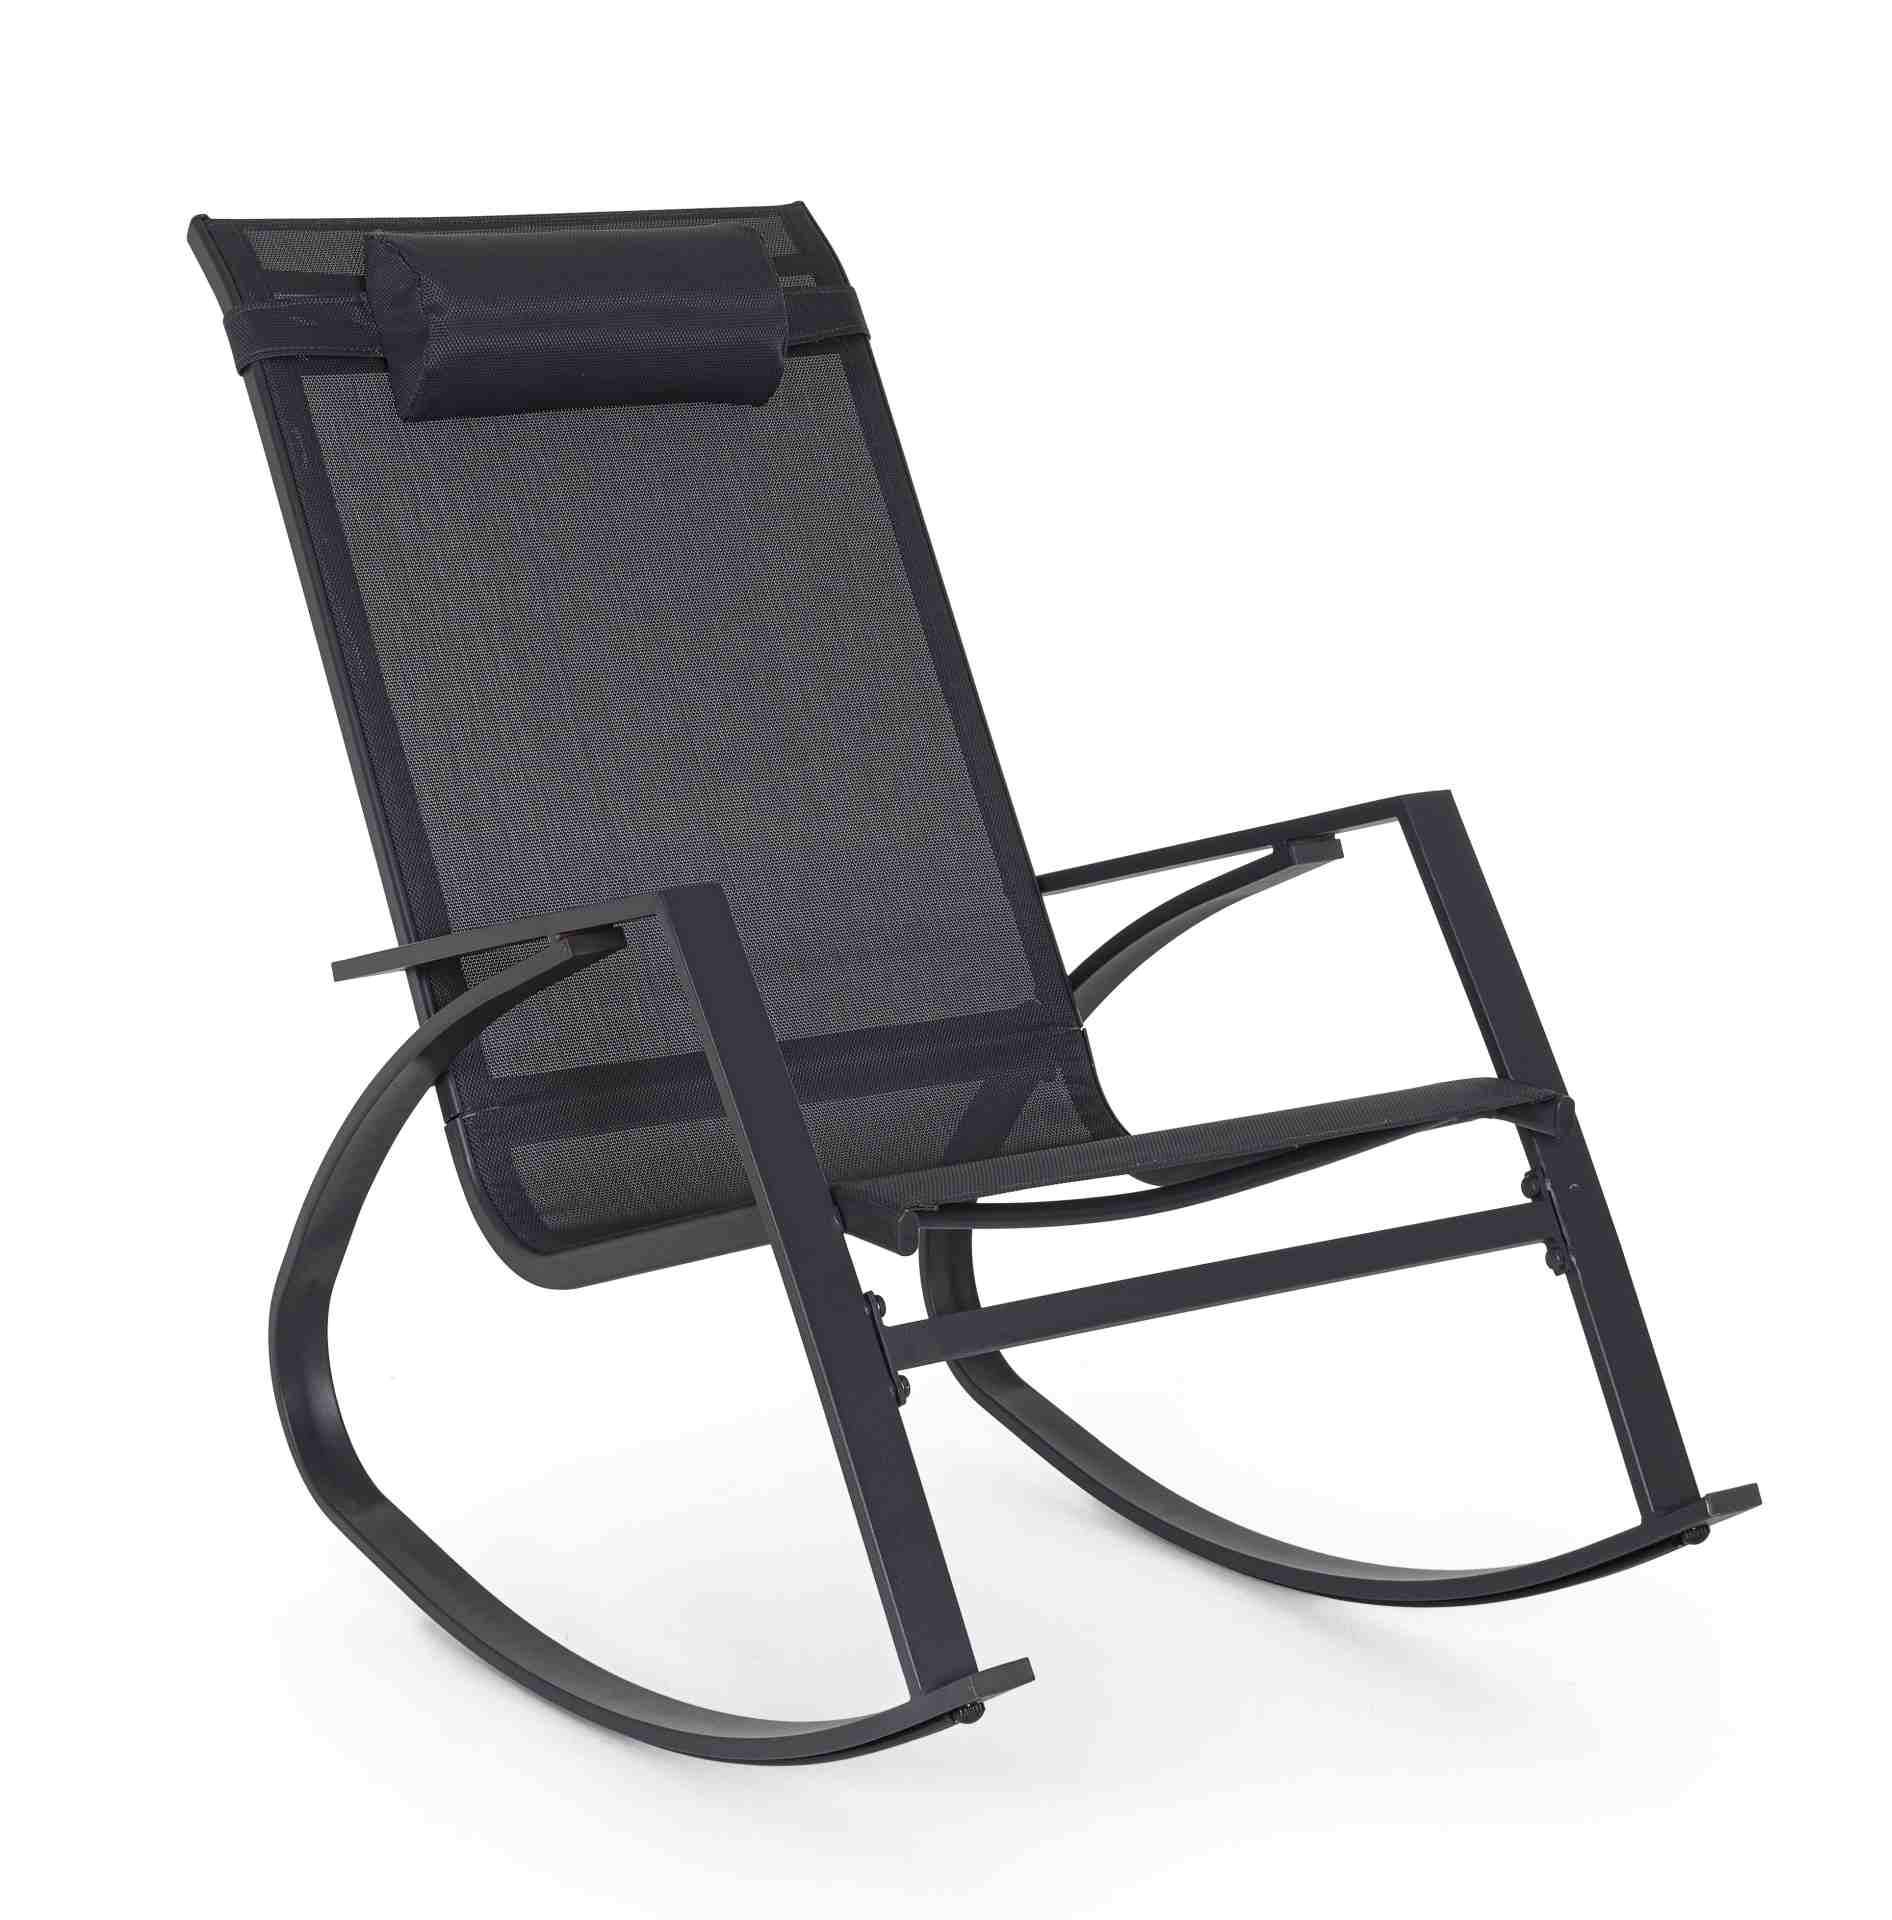 Der Gartensessel Demid überzeugt mit seinem klassischen Design. Gefertigt wurde er aus Textilene, welche einen Anthrazit Farbton besitzt. Das Gestell ist aus Metall und hat eine Anthrazit Farbe. Der Sessel verfügt über eine Sitzhöhe von 41 cm und ist für 